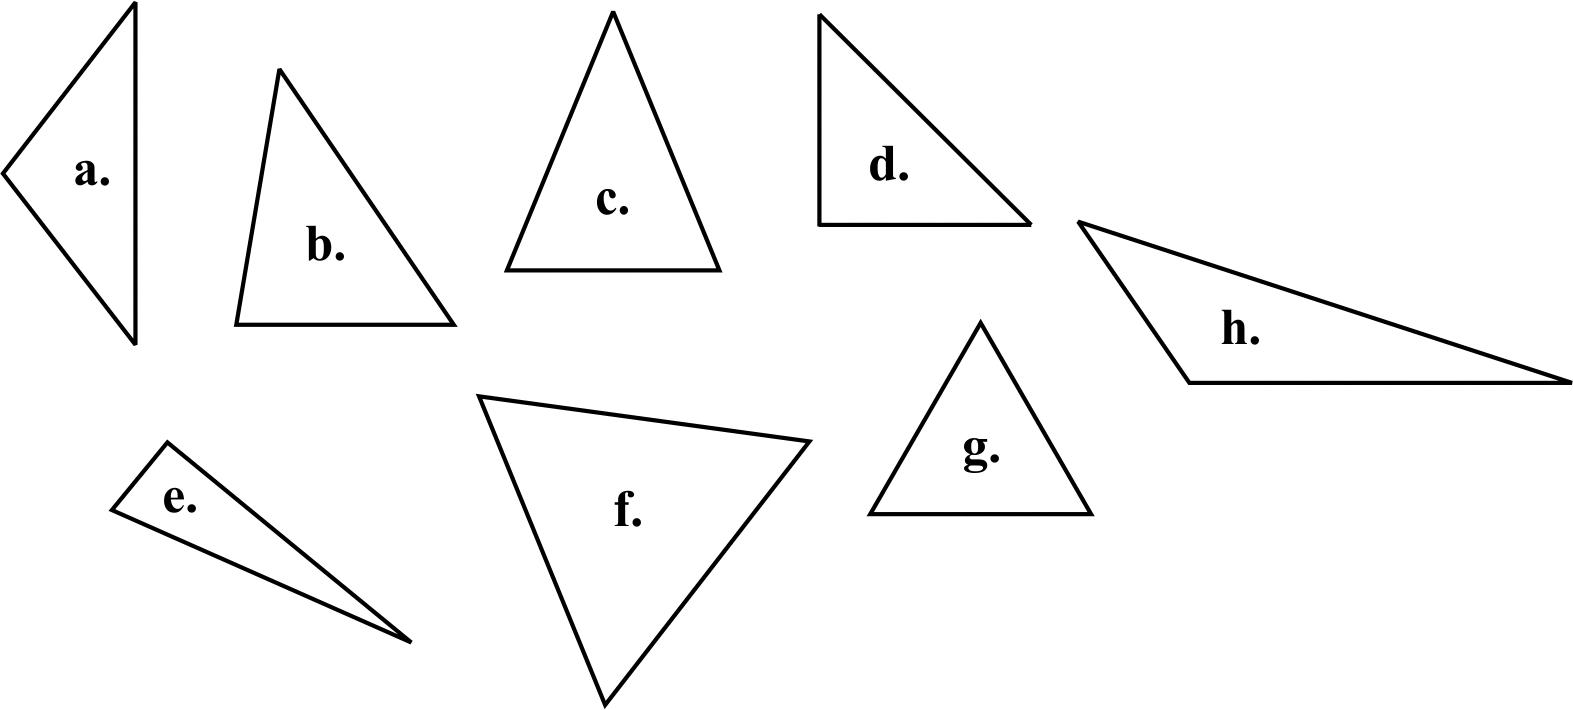 are all isosceles triangles similar